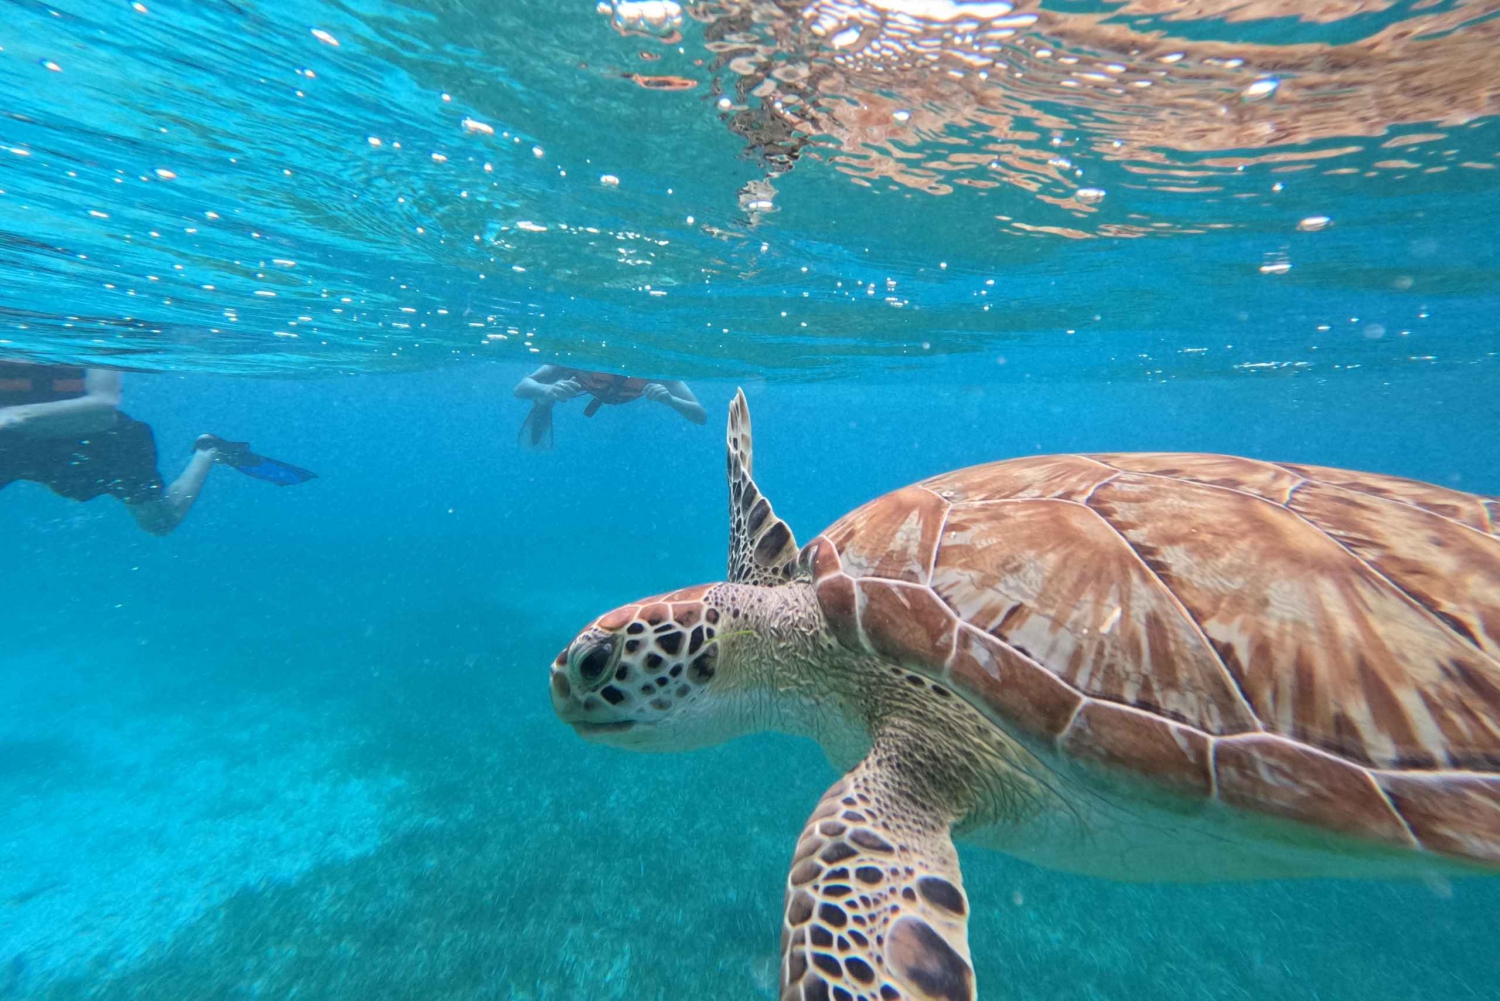 practica snorkel con peces tropicales, arrecifes, tortugas y rayas marinas